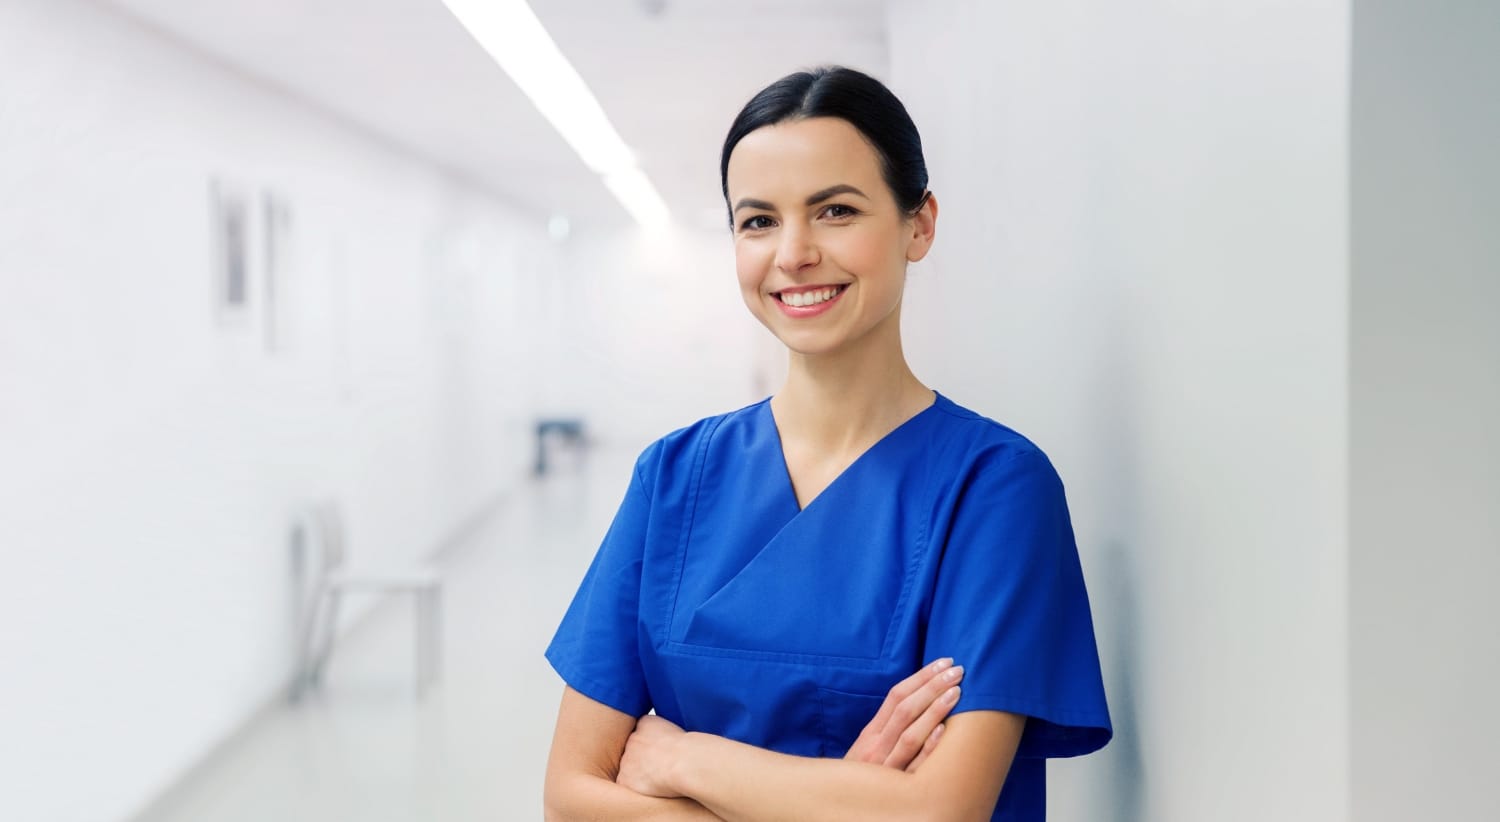 Enfermera sonriente en un pasillo